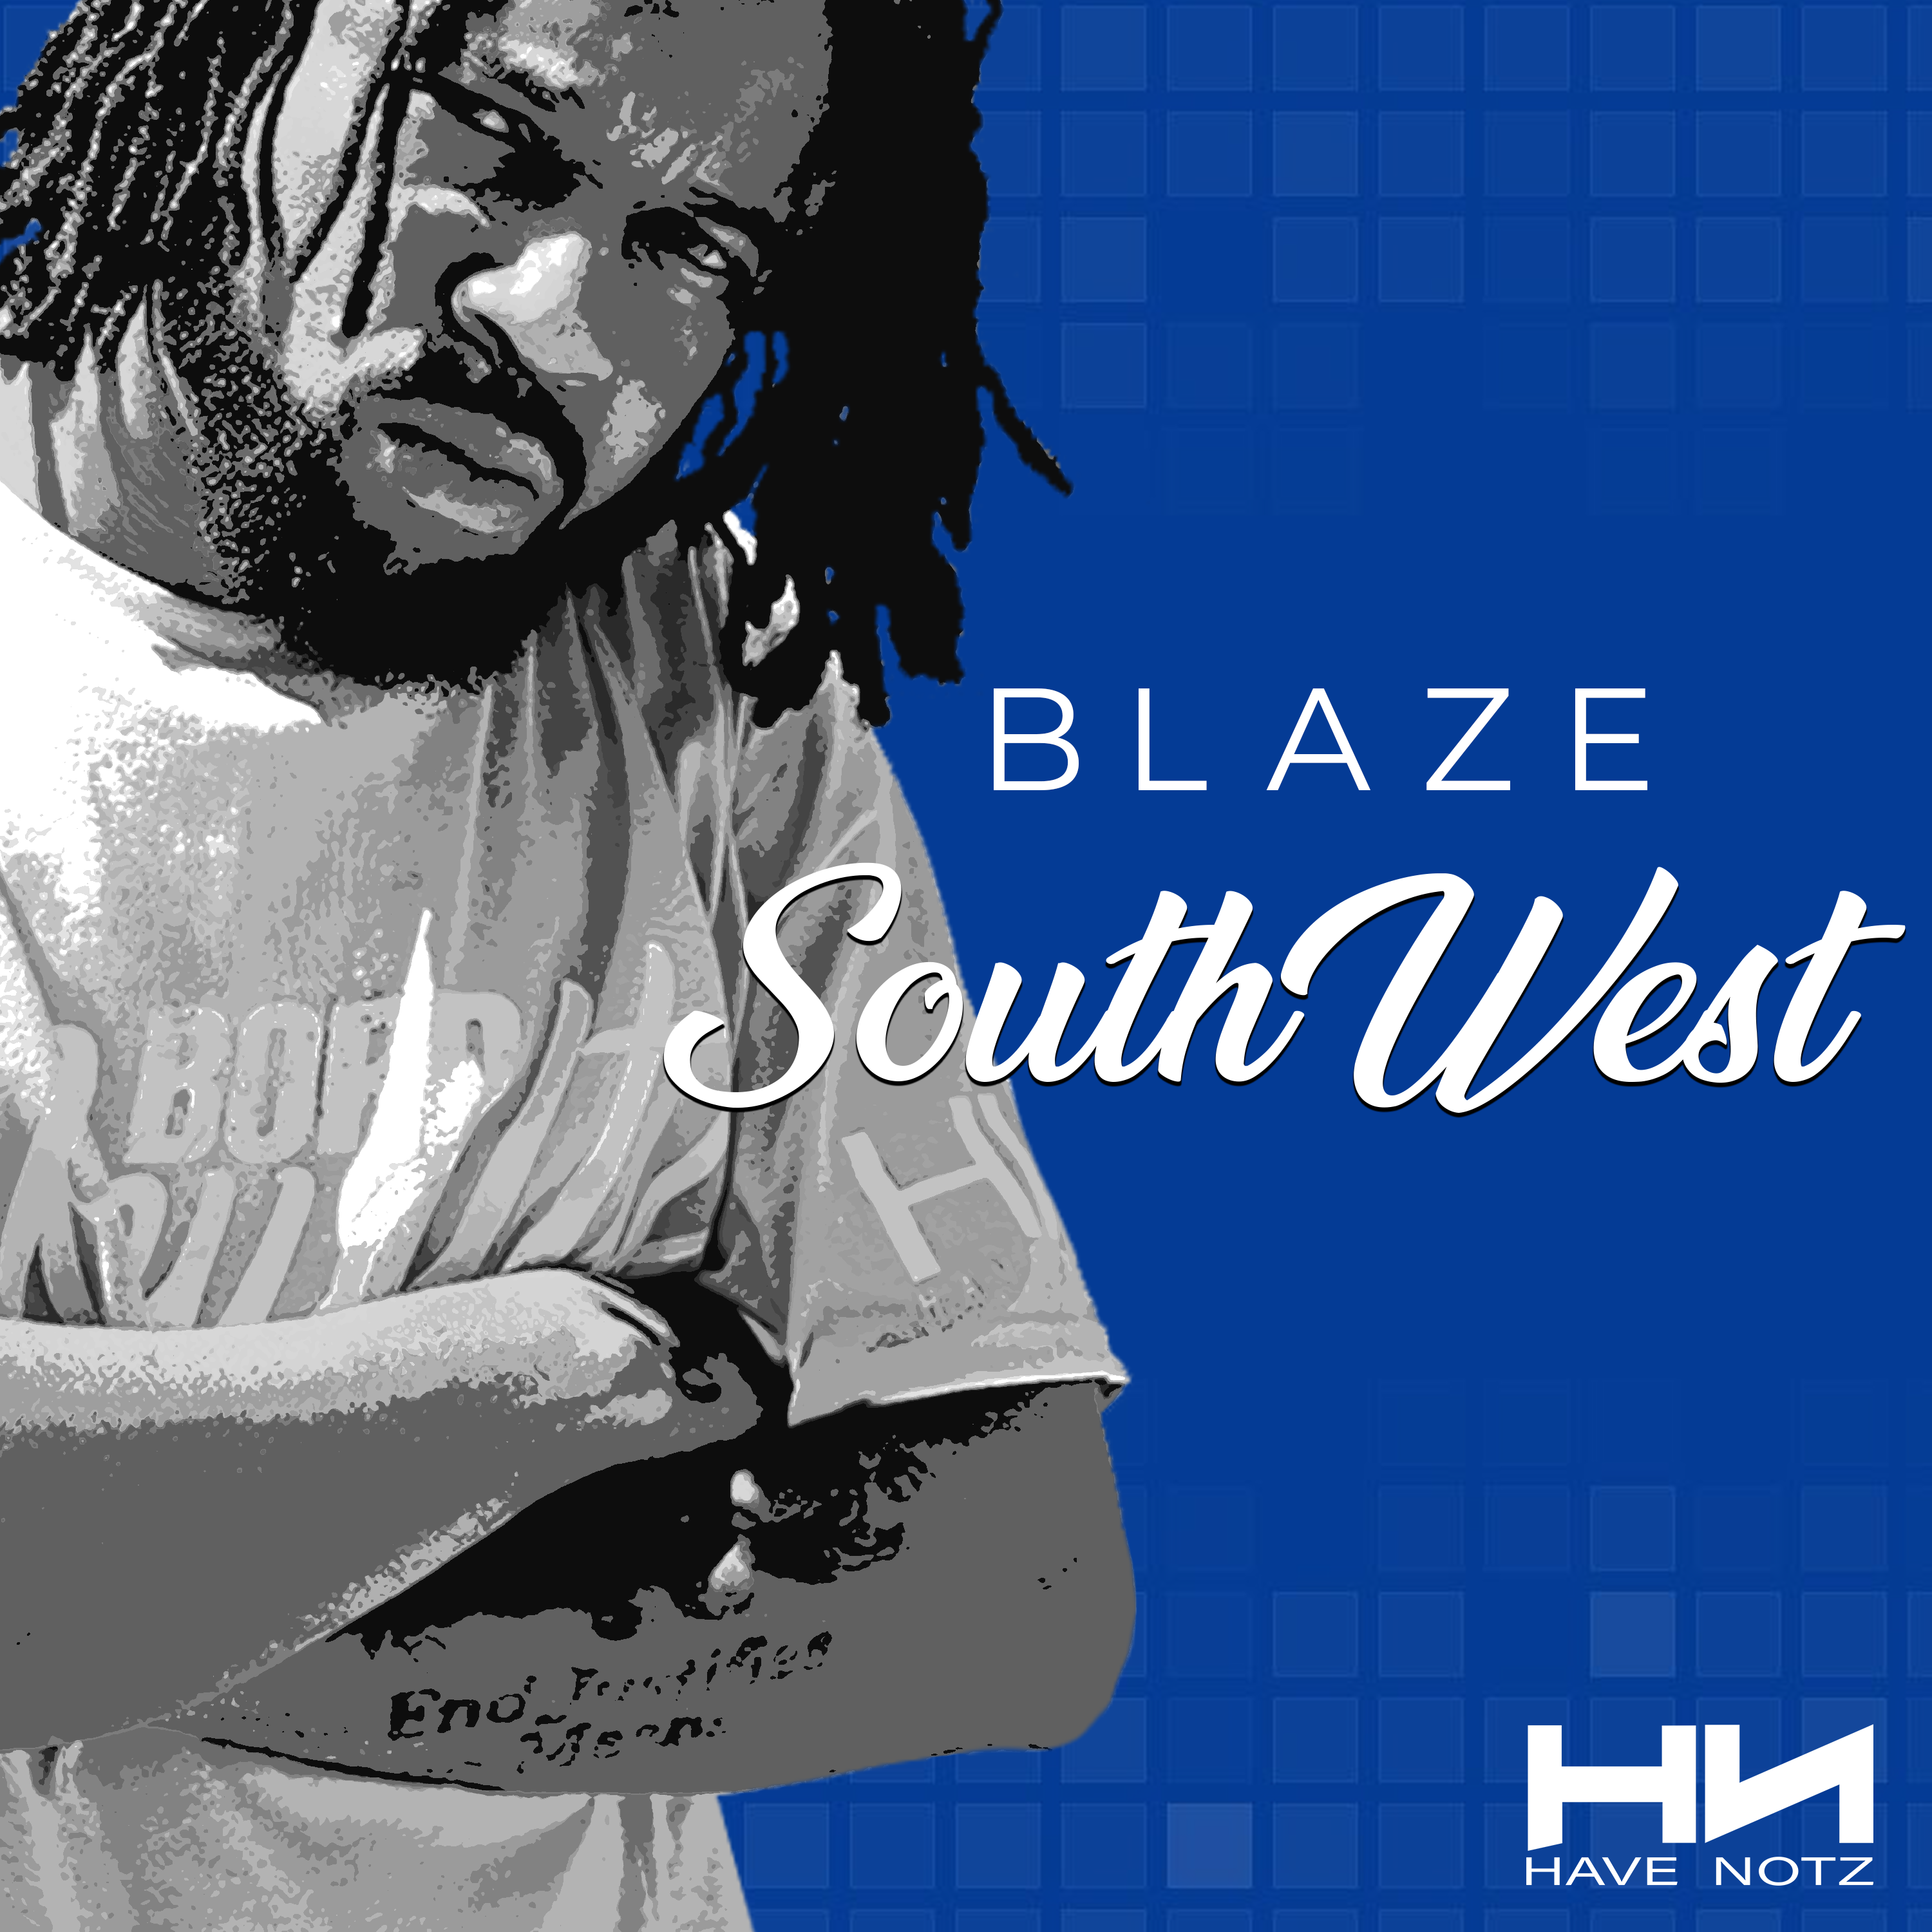 hip-hop-az-have-notz-Southwest-Blaze-music